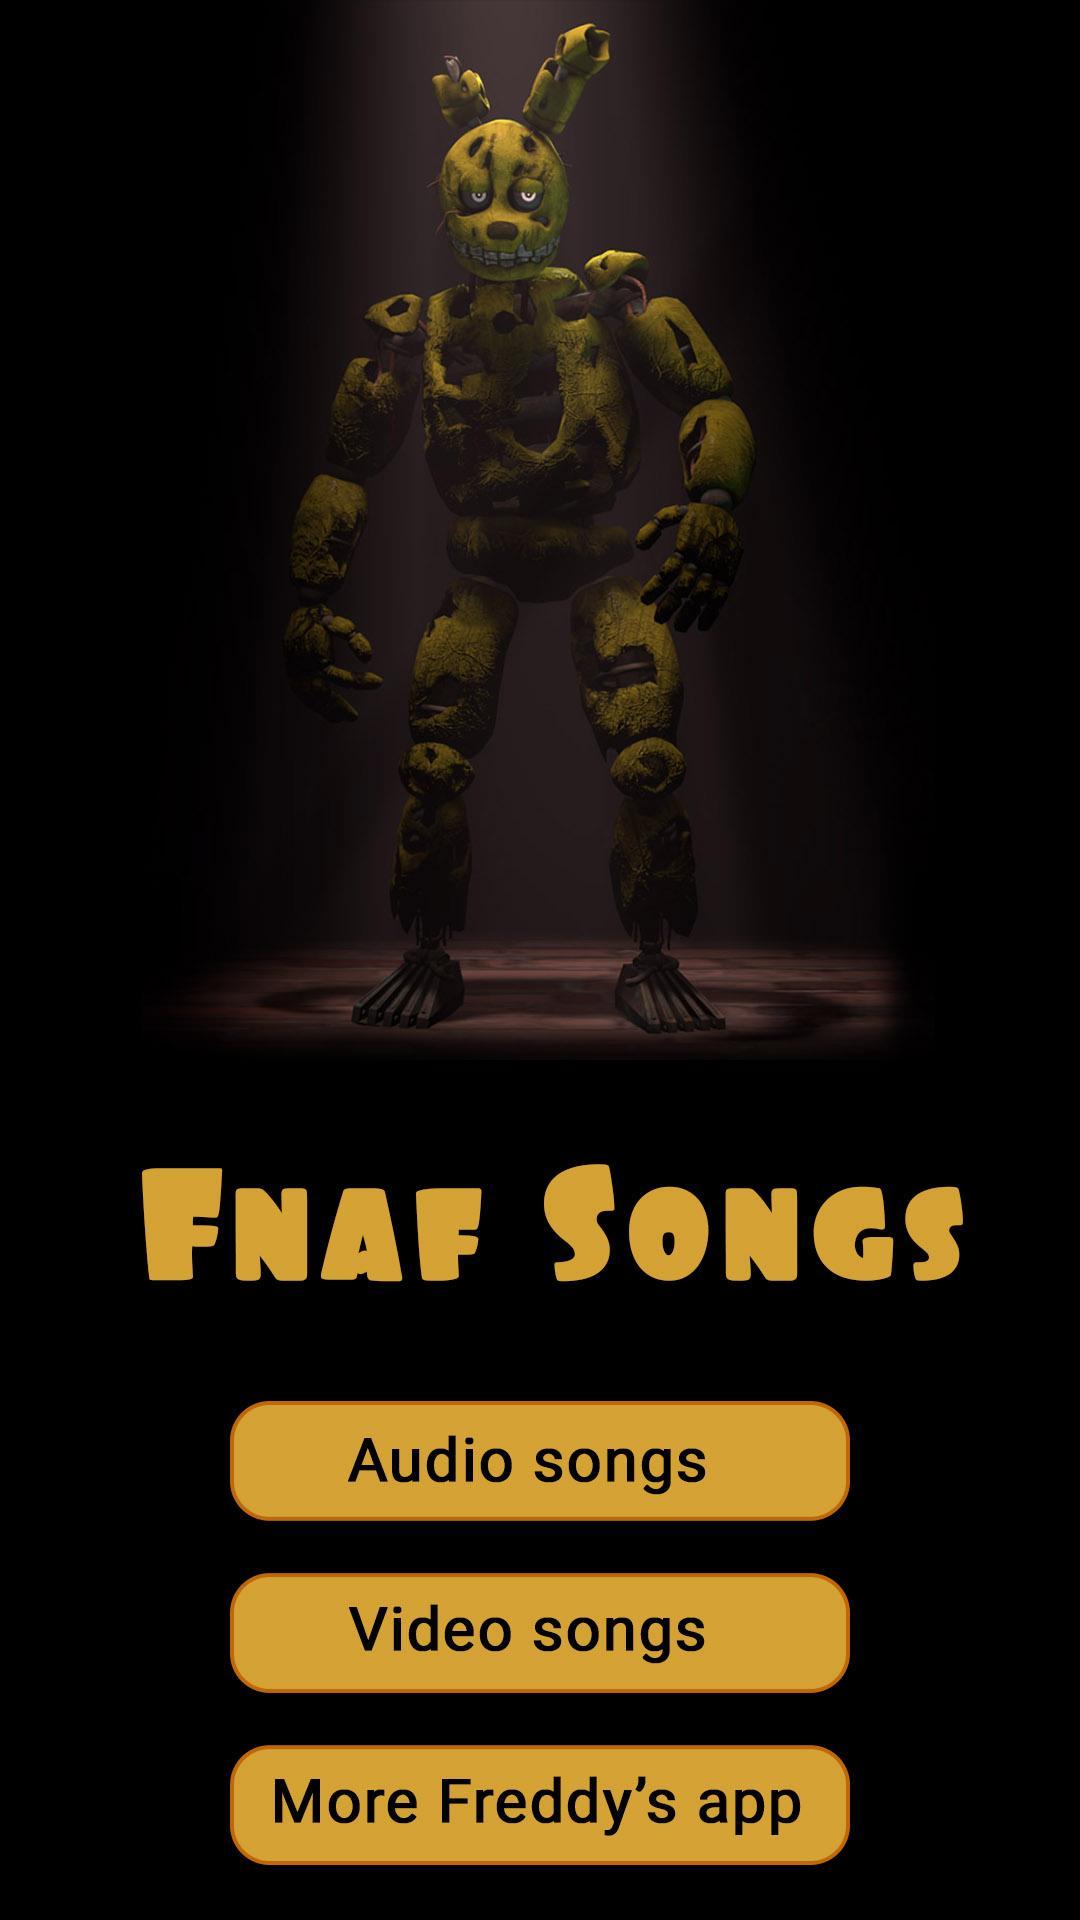 Fnaf песня текст. ФНАФ Сонг. Песни FNAF. ФНАФ Соундбоард. FNAF Song.